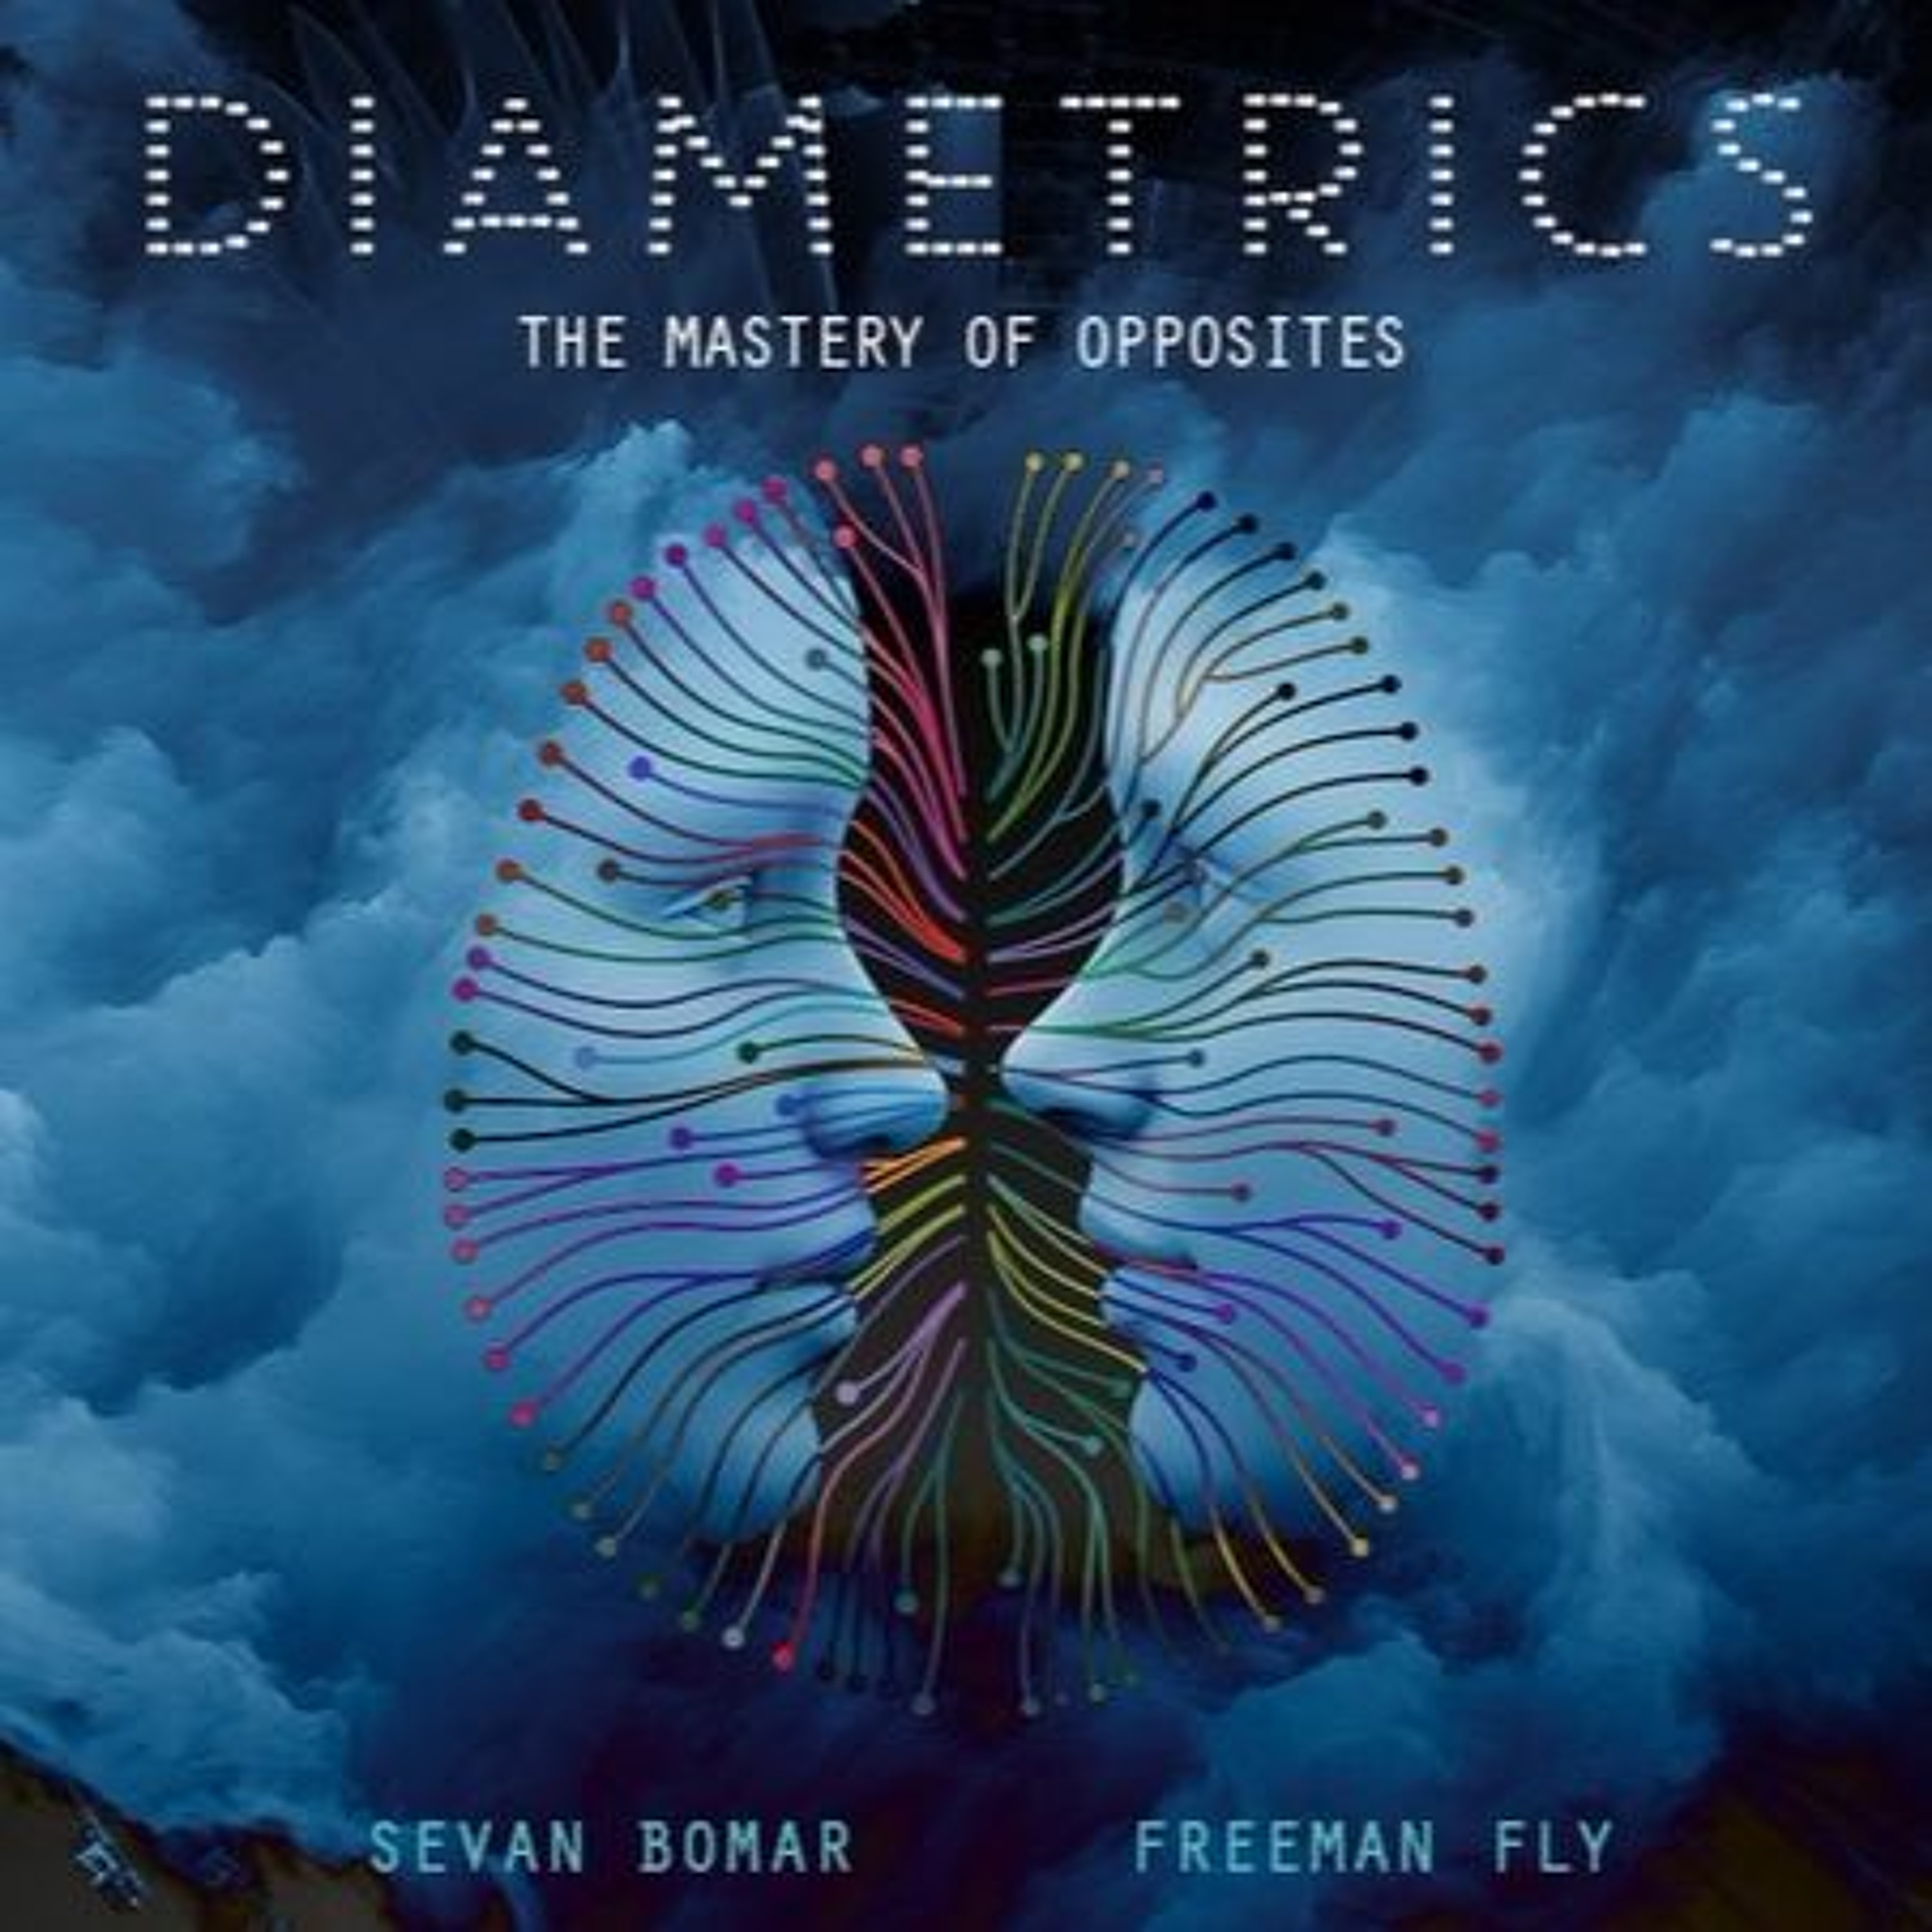 SEVAN BOMAR - DIAMETRICS, THE MASTERY OF OPPOSITES - JUN 20 2015